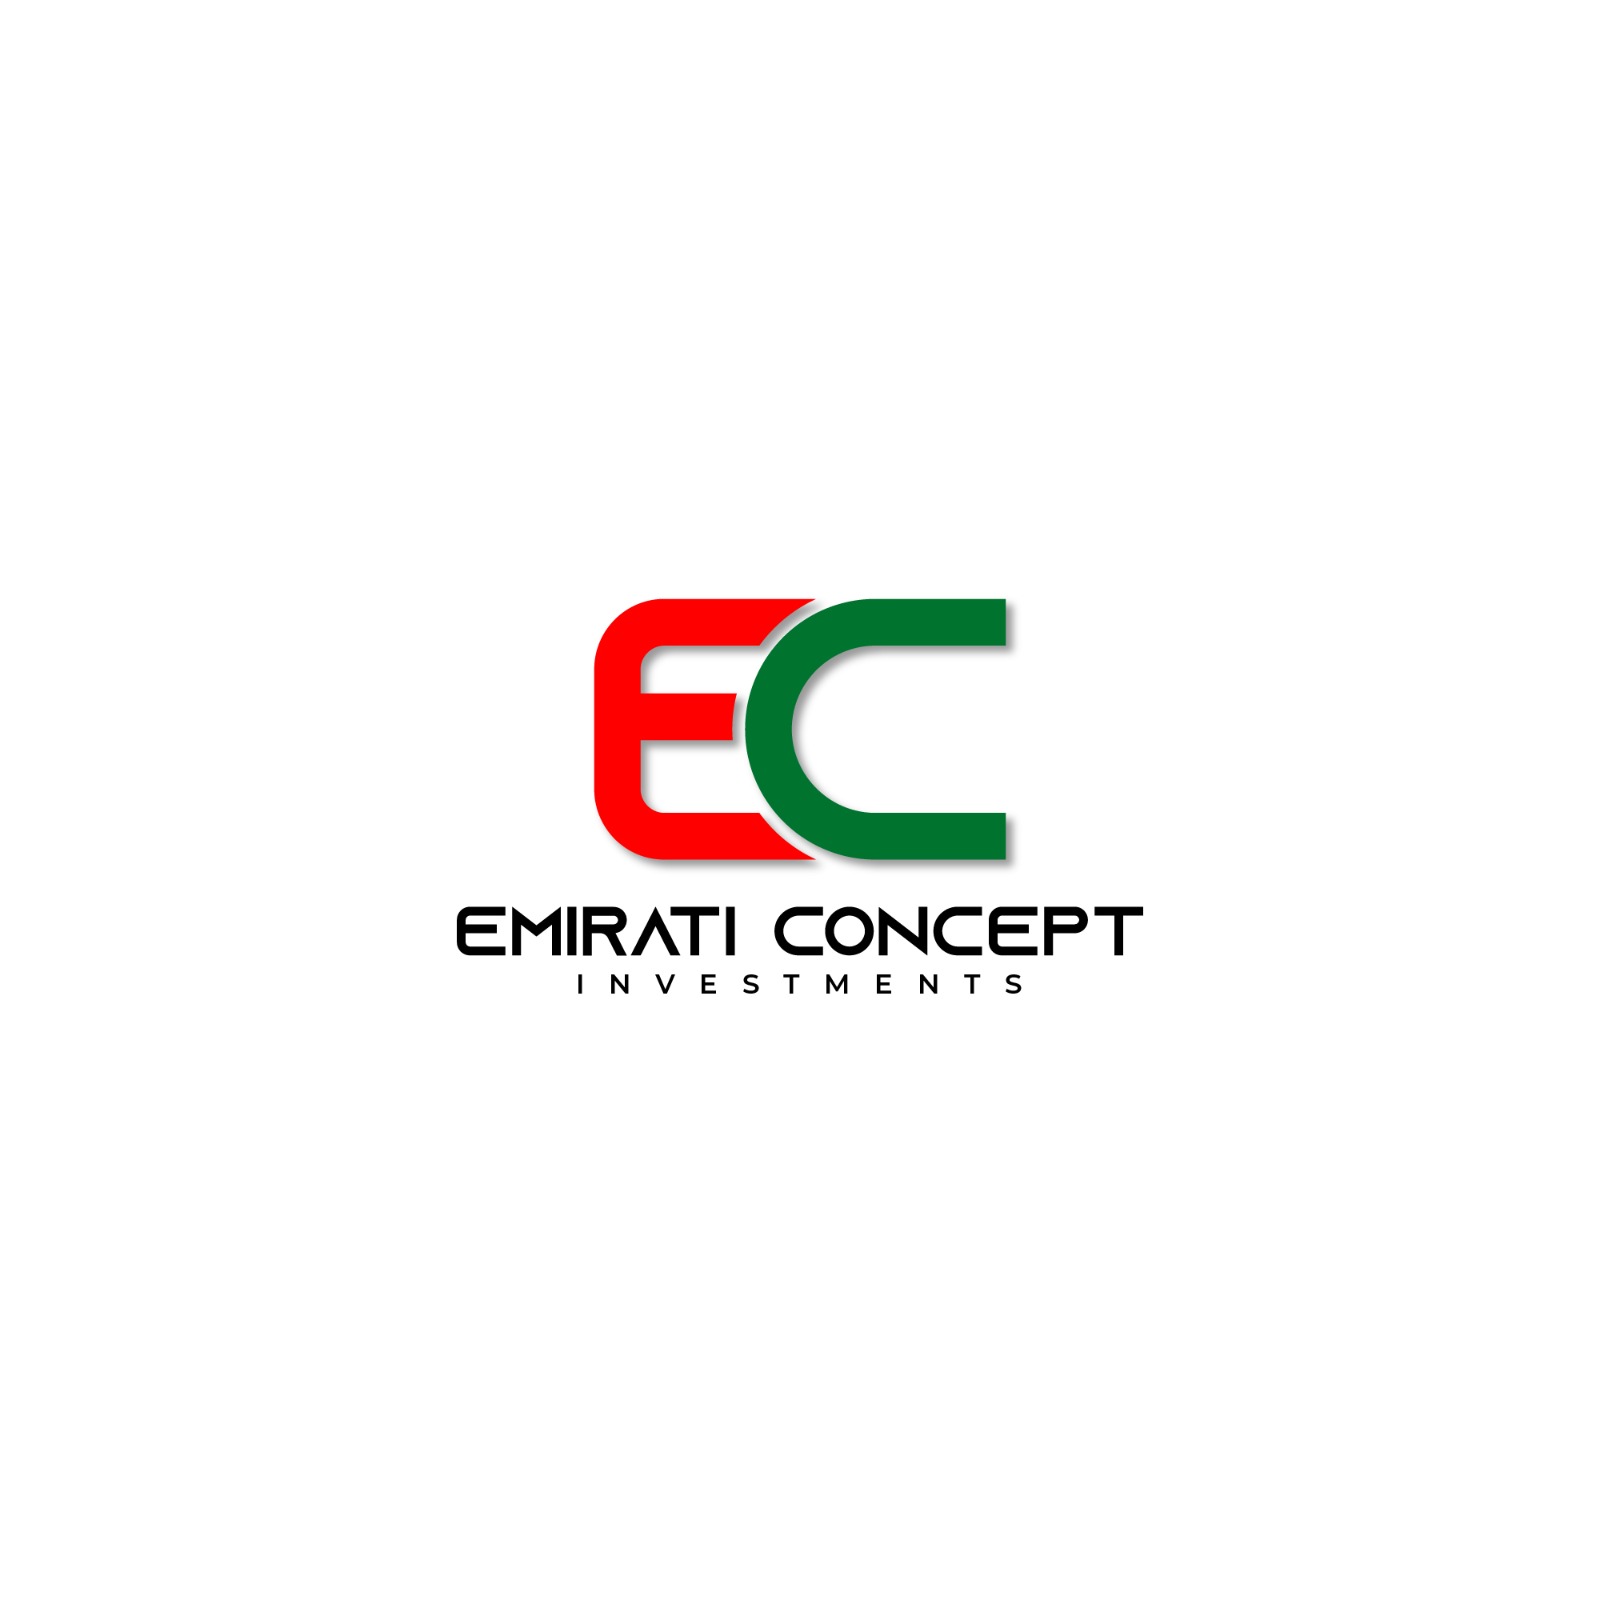 Emirati Concept Investment